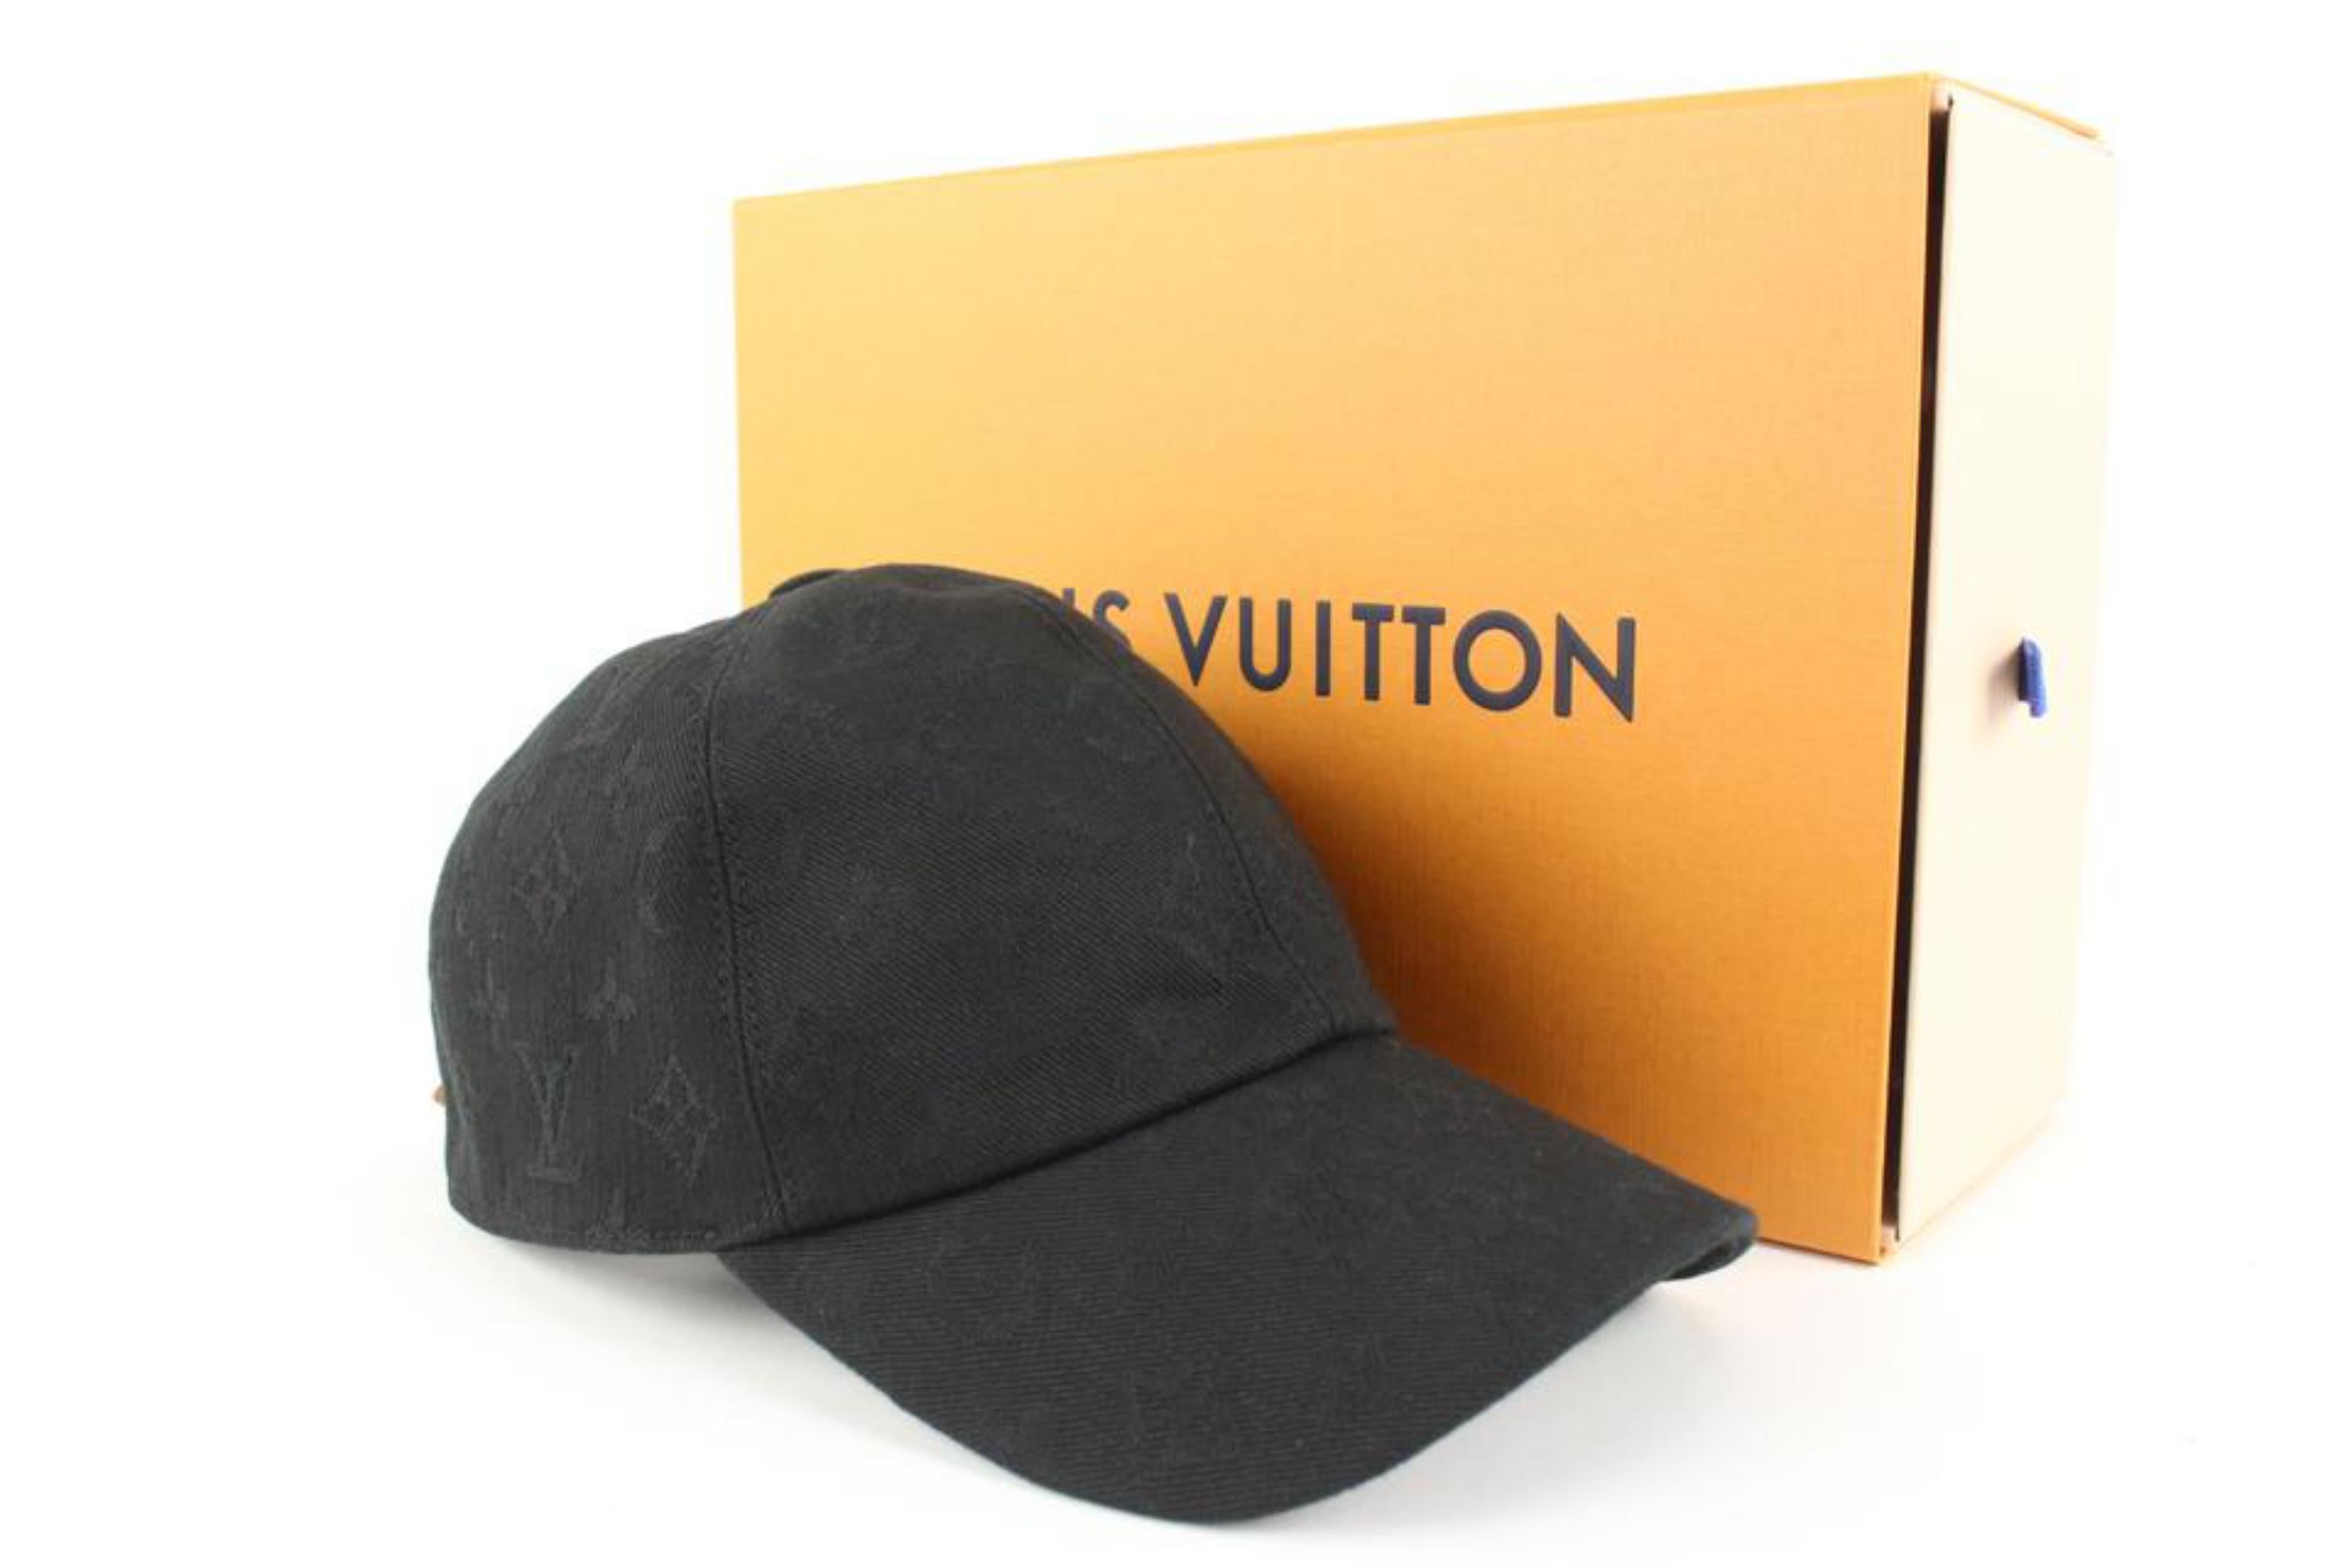 LV Supreme Cap Hat Unisex  Louis vuitton supreme, Caps hats, Vuitton